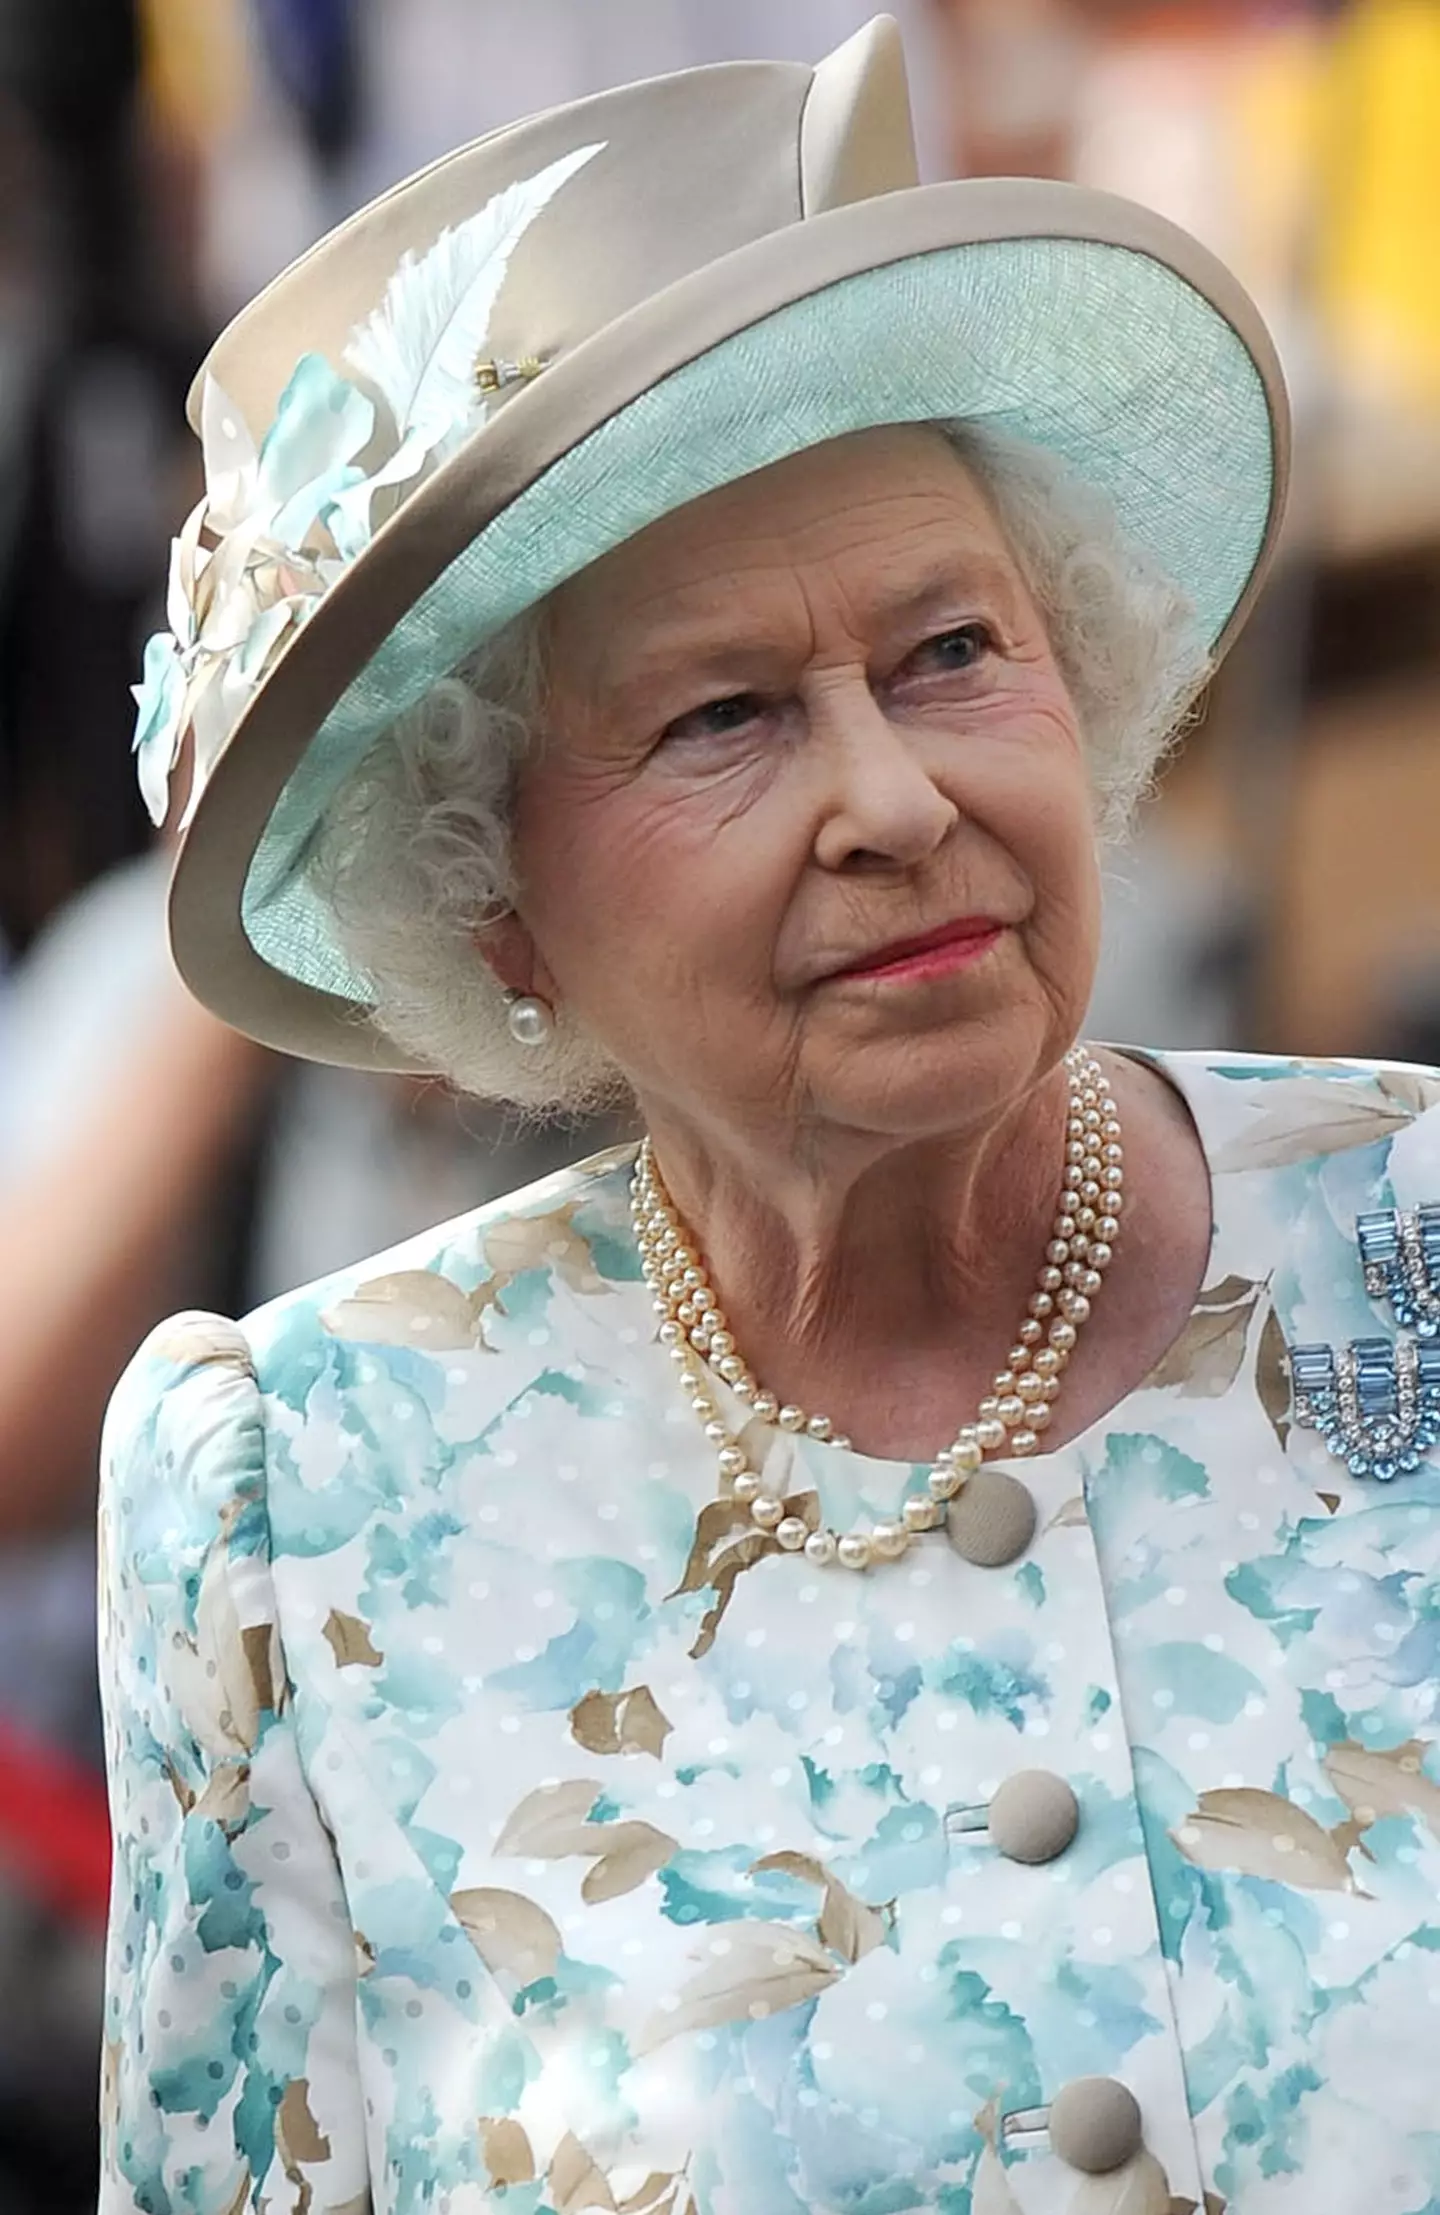 The Queen's Speech has been a Christmas staple since 1950. [